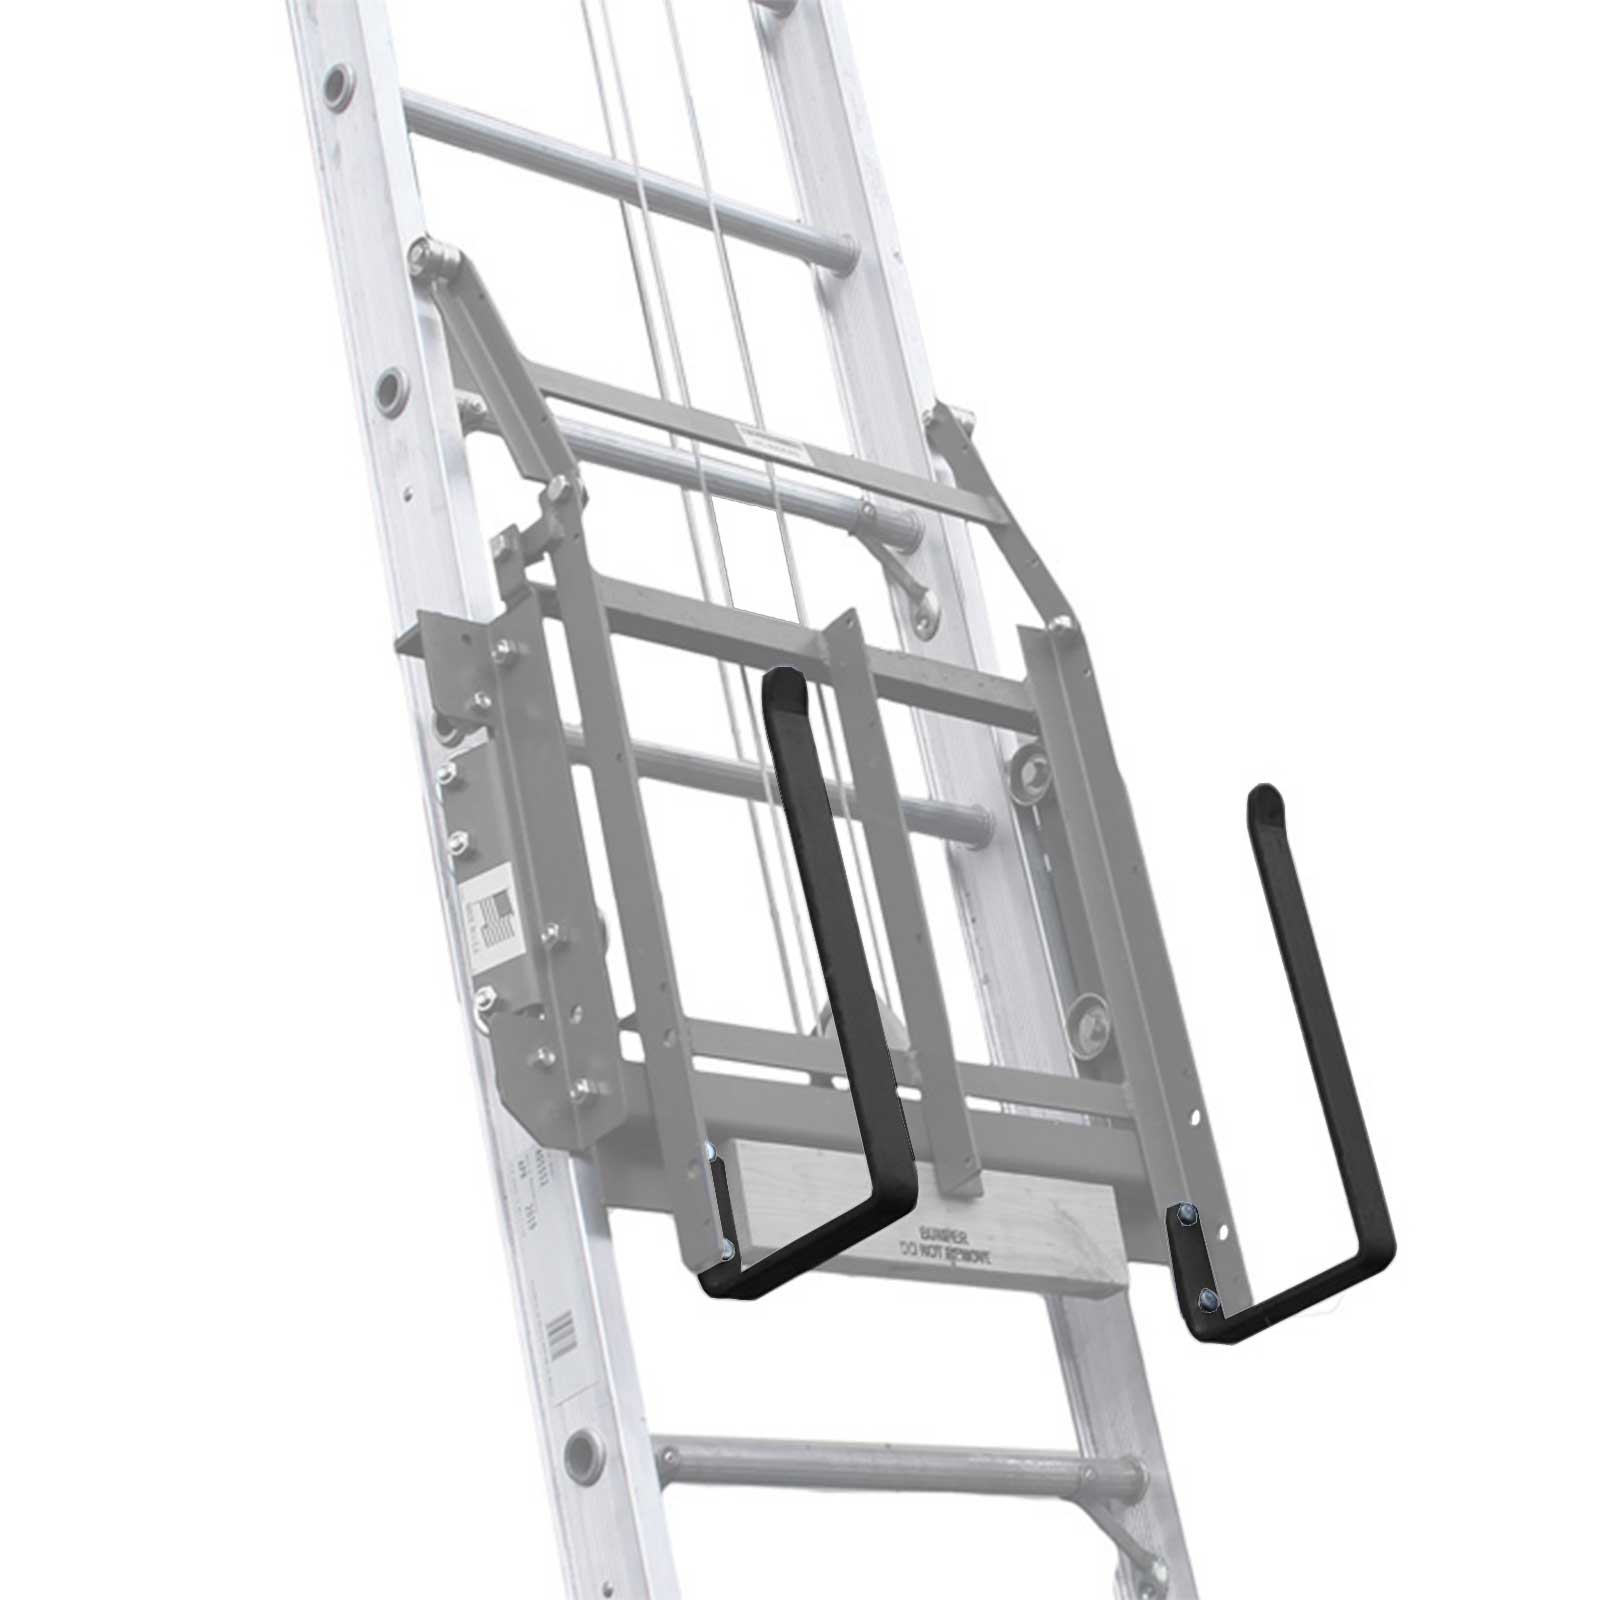 RGC Ladder Hoist Accessories Discount